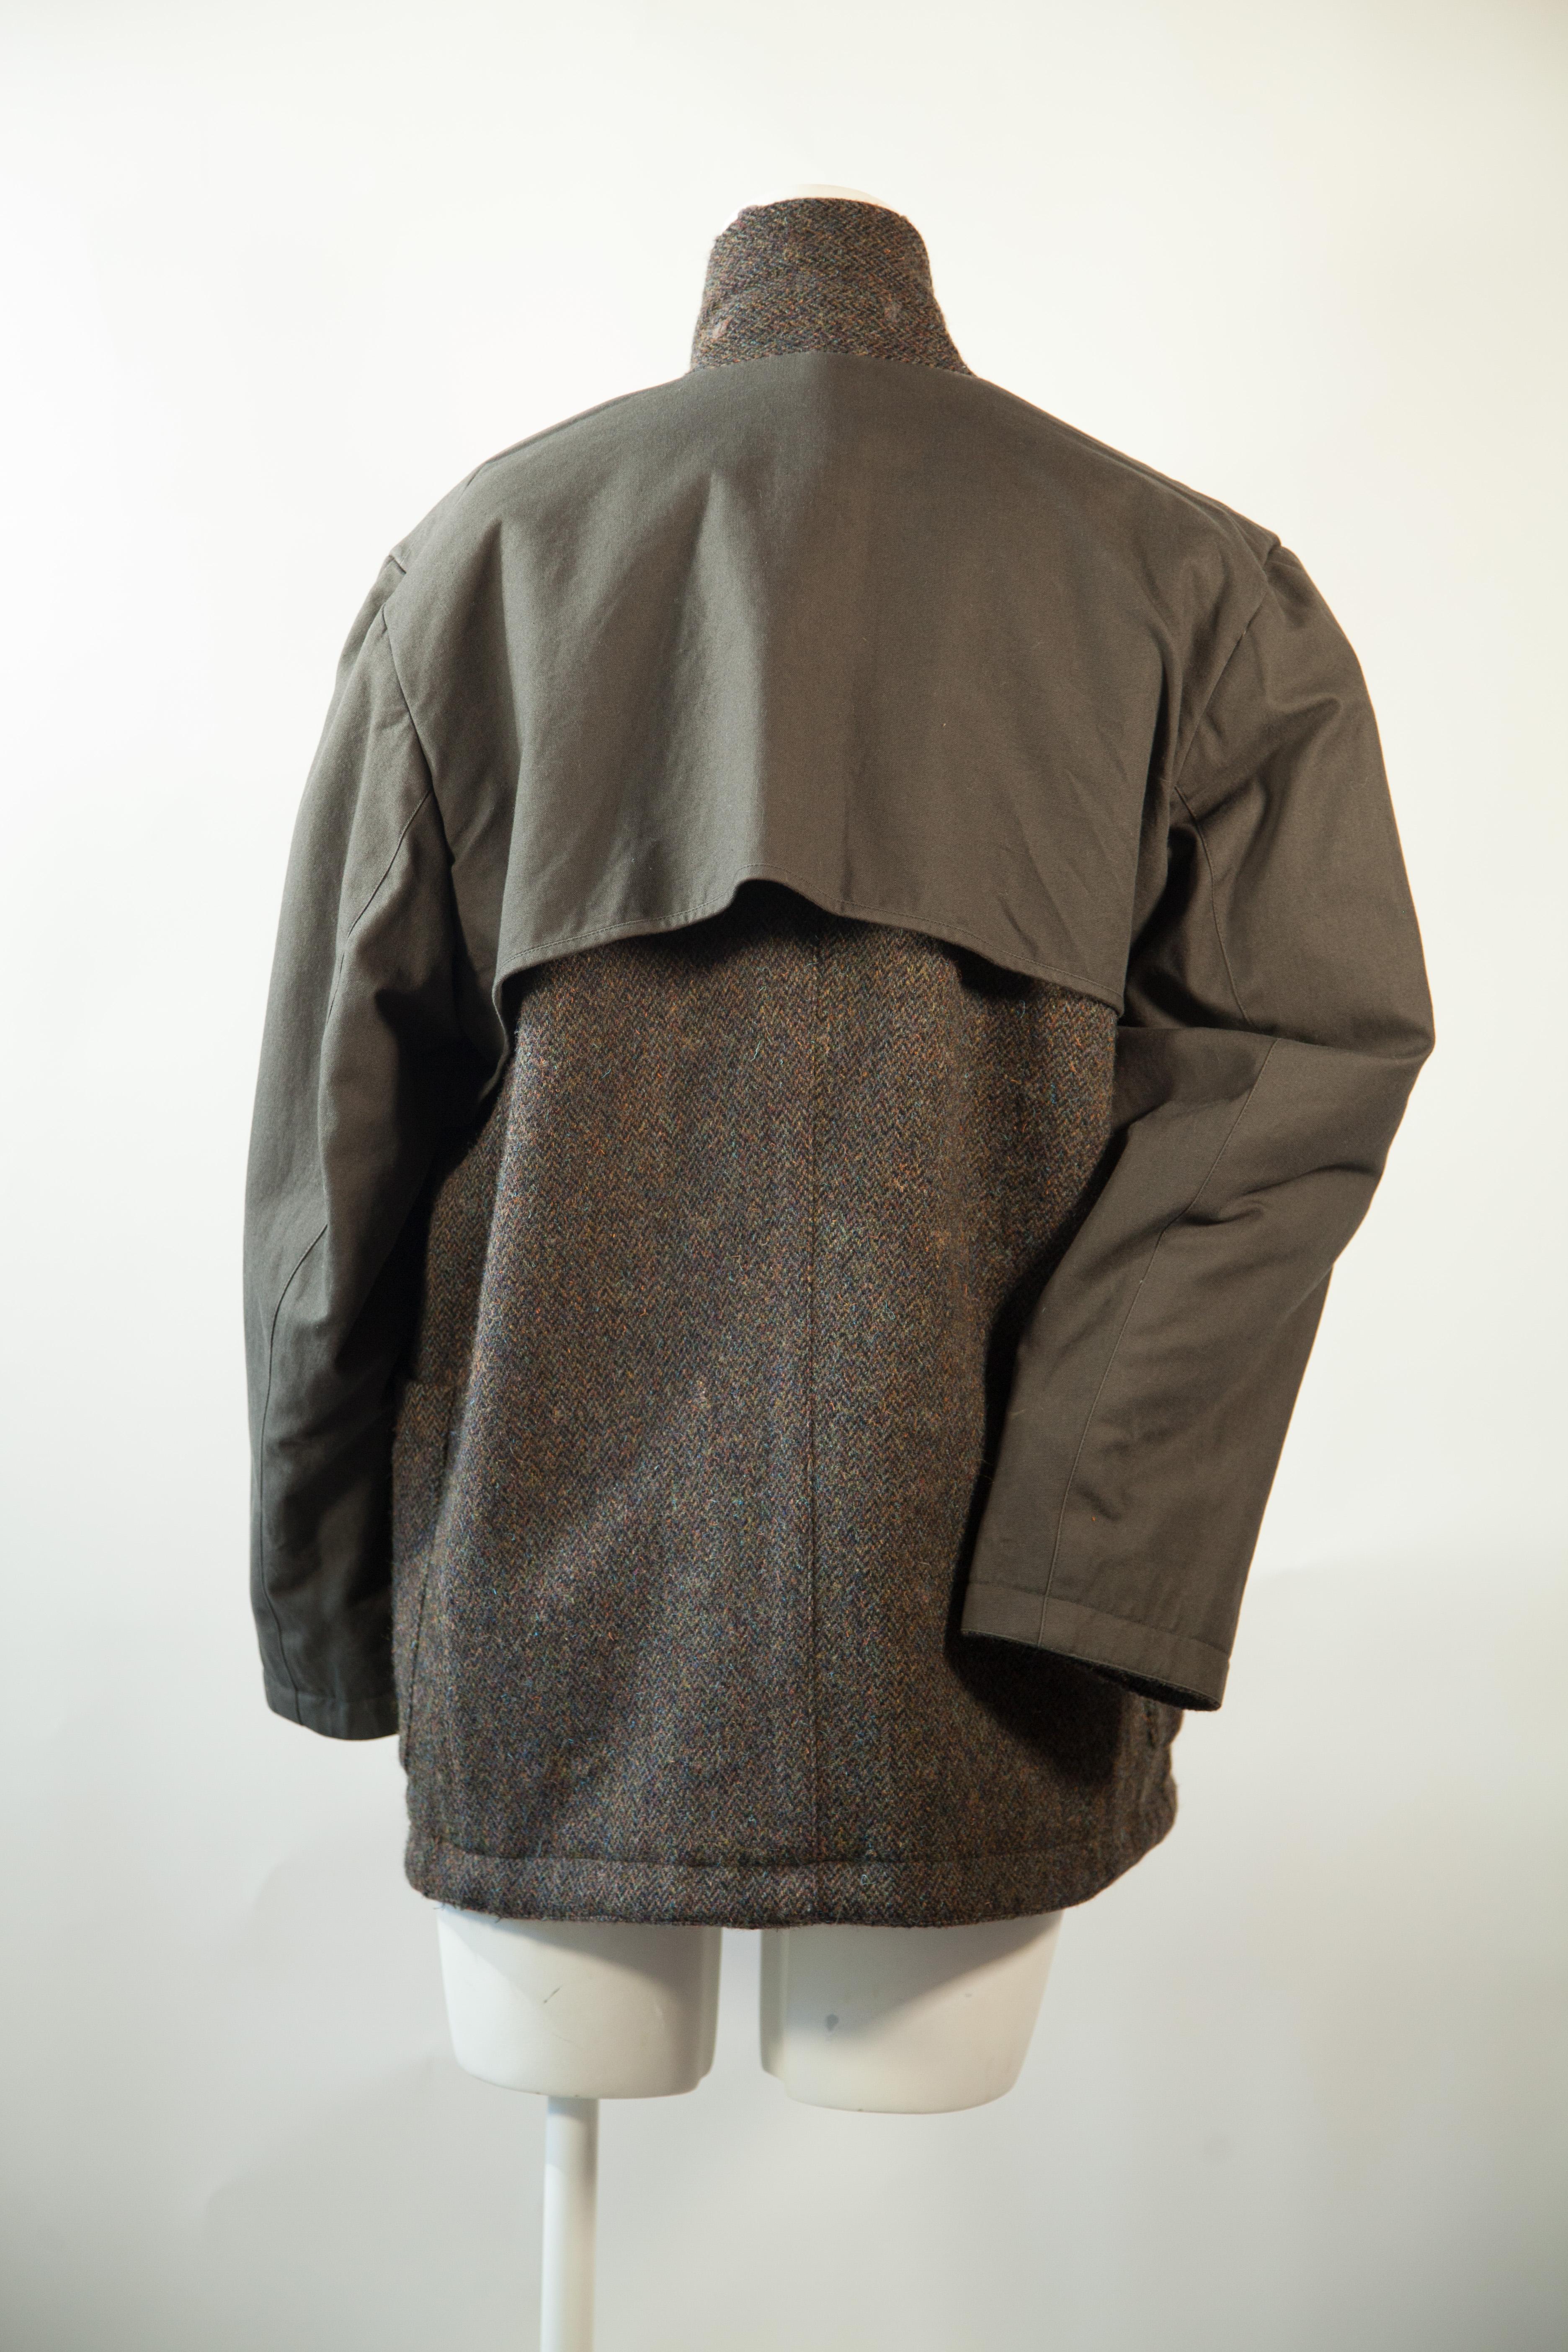 Issey Miyake, Rare, Reversible, Wool, Tweed Jacket, 1970s For Sale 2